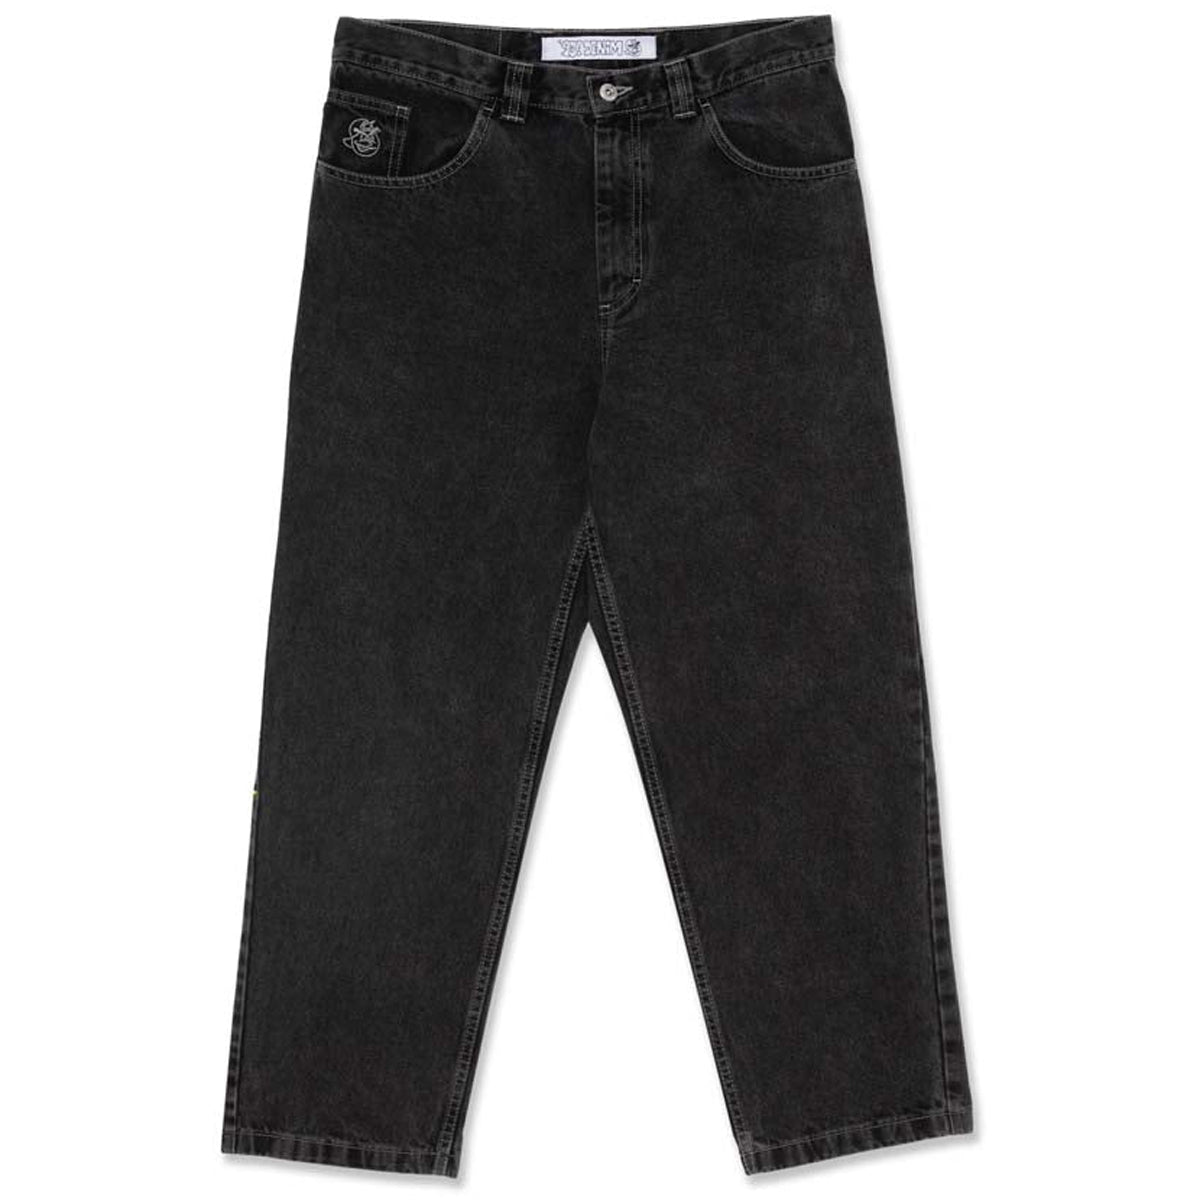 Polar 93! Denim Jeans - Silver Black image 1